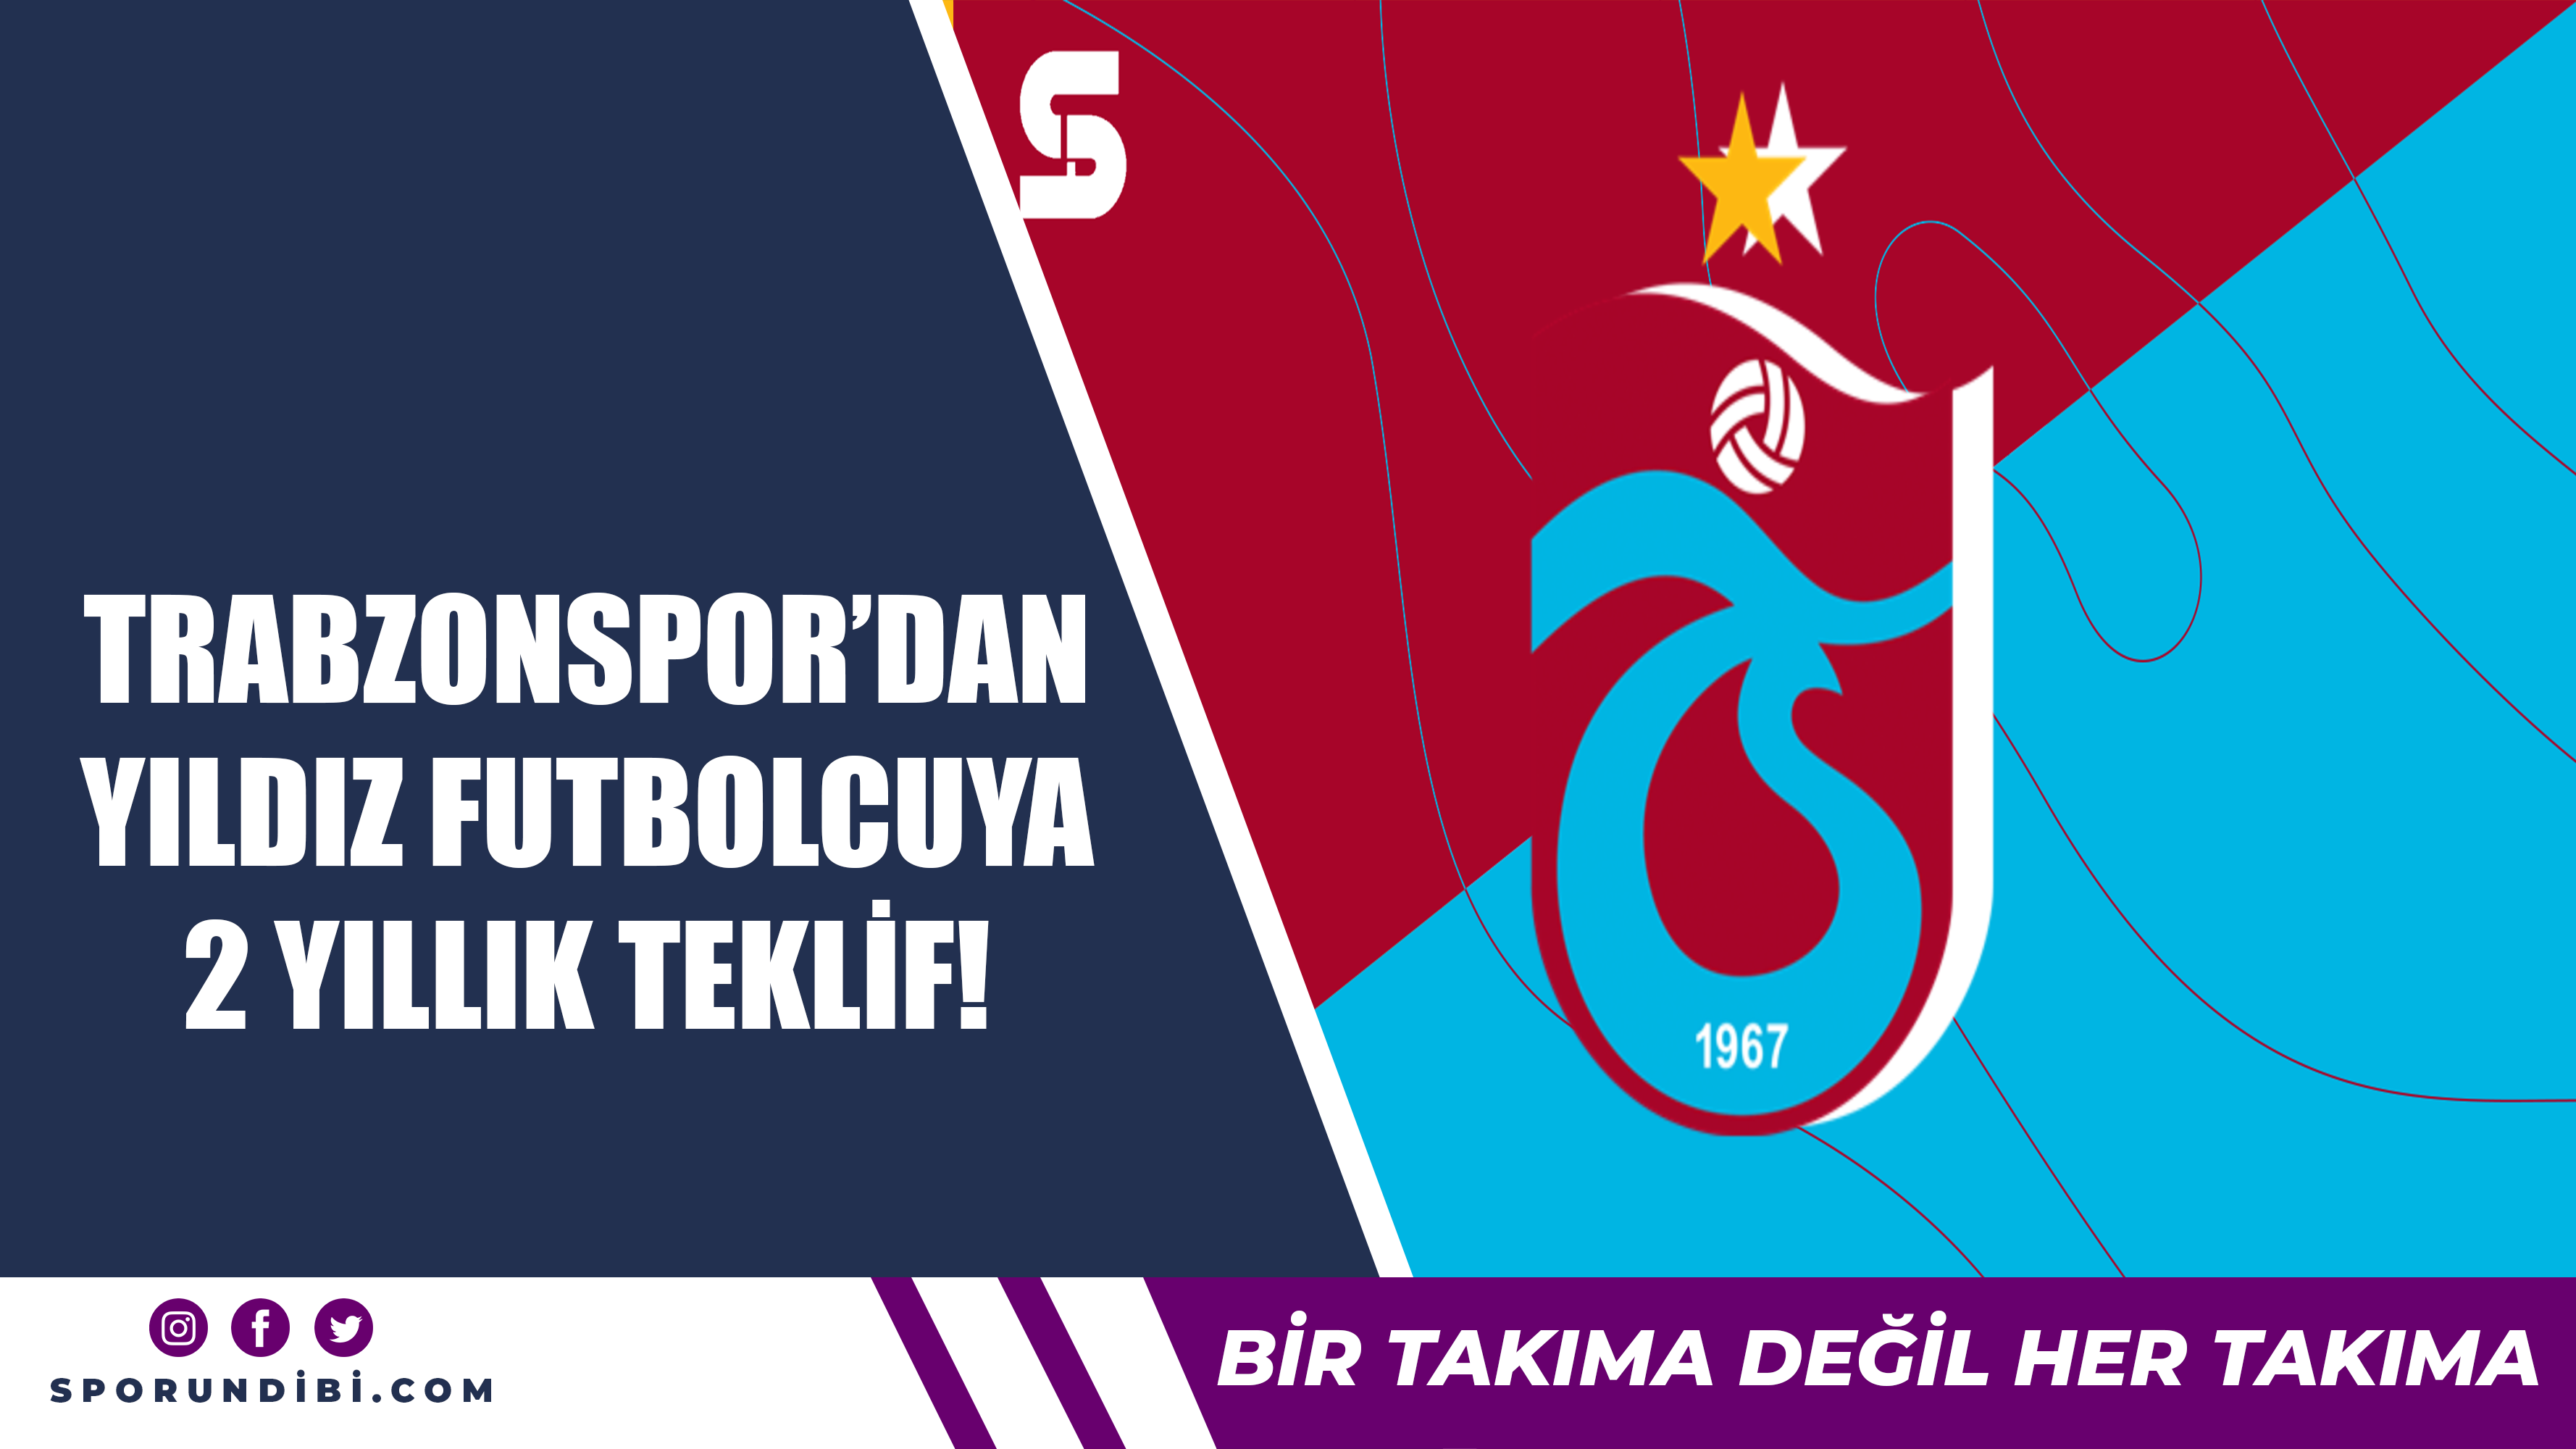 Trabzonspor'dan yıldız futbolcuya 2 yıllık teklif!